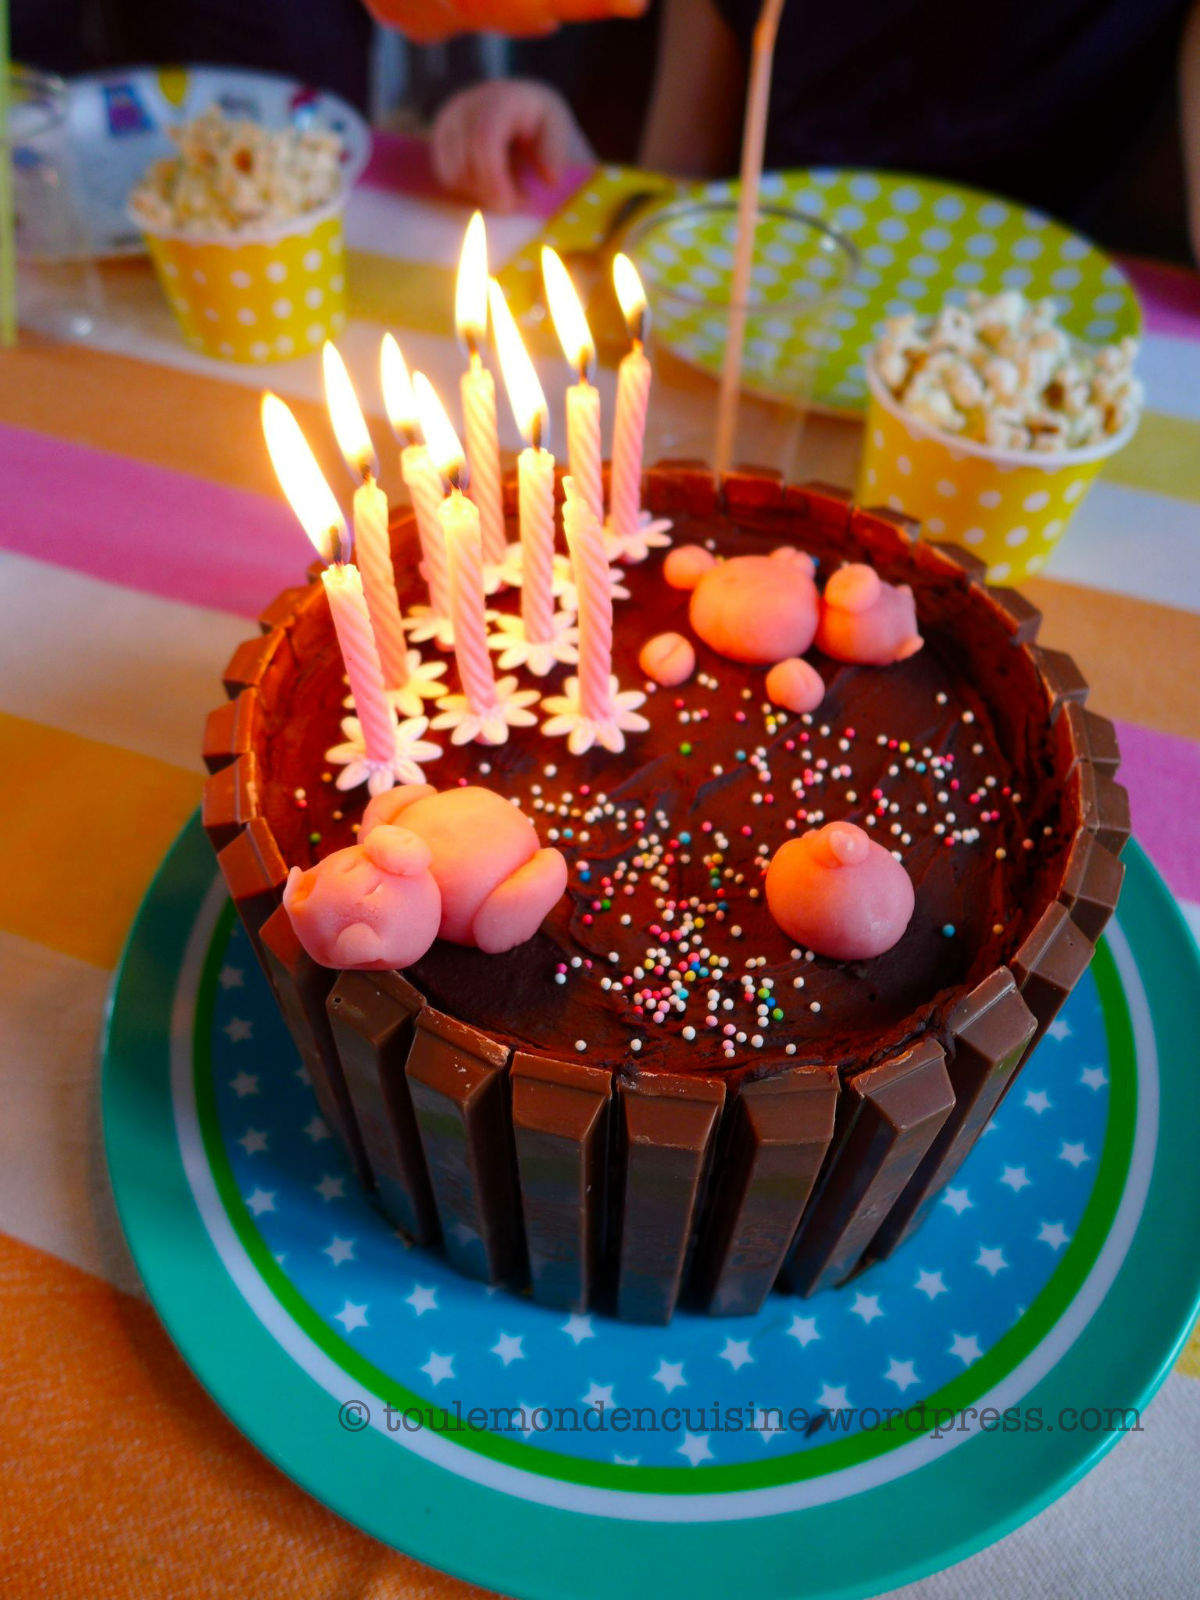 Recette de Gâteau d'anniversaire Marmiton - idée gateaux anniversaire